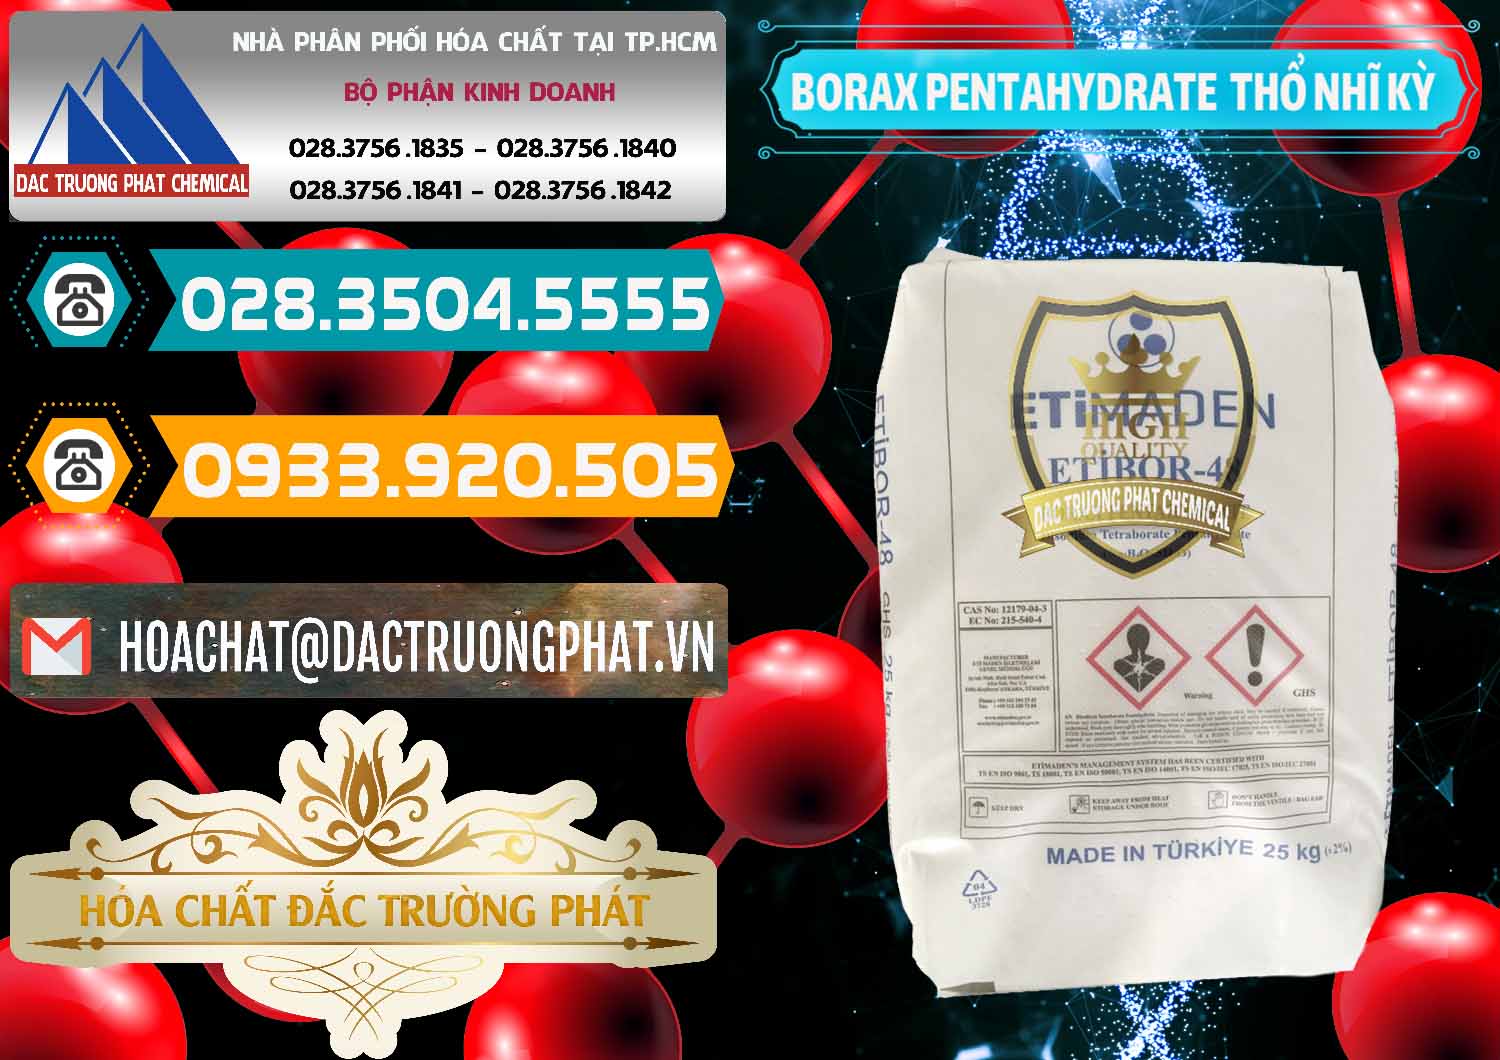 Cty bán & phân phối Borax Pentahydrate Thổ Nhĩ Kỳ Turkey - 0431 - Nơi cung cấp - nhập khẩu hóa chất tại TP.HCM - congtyhoachat.vn